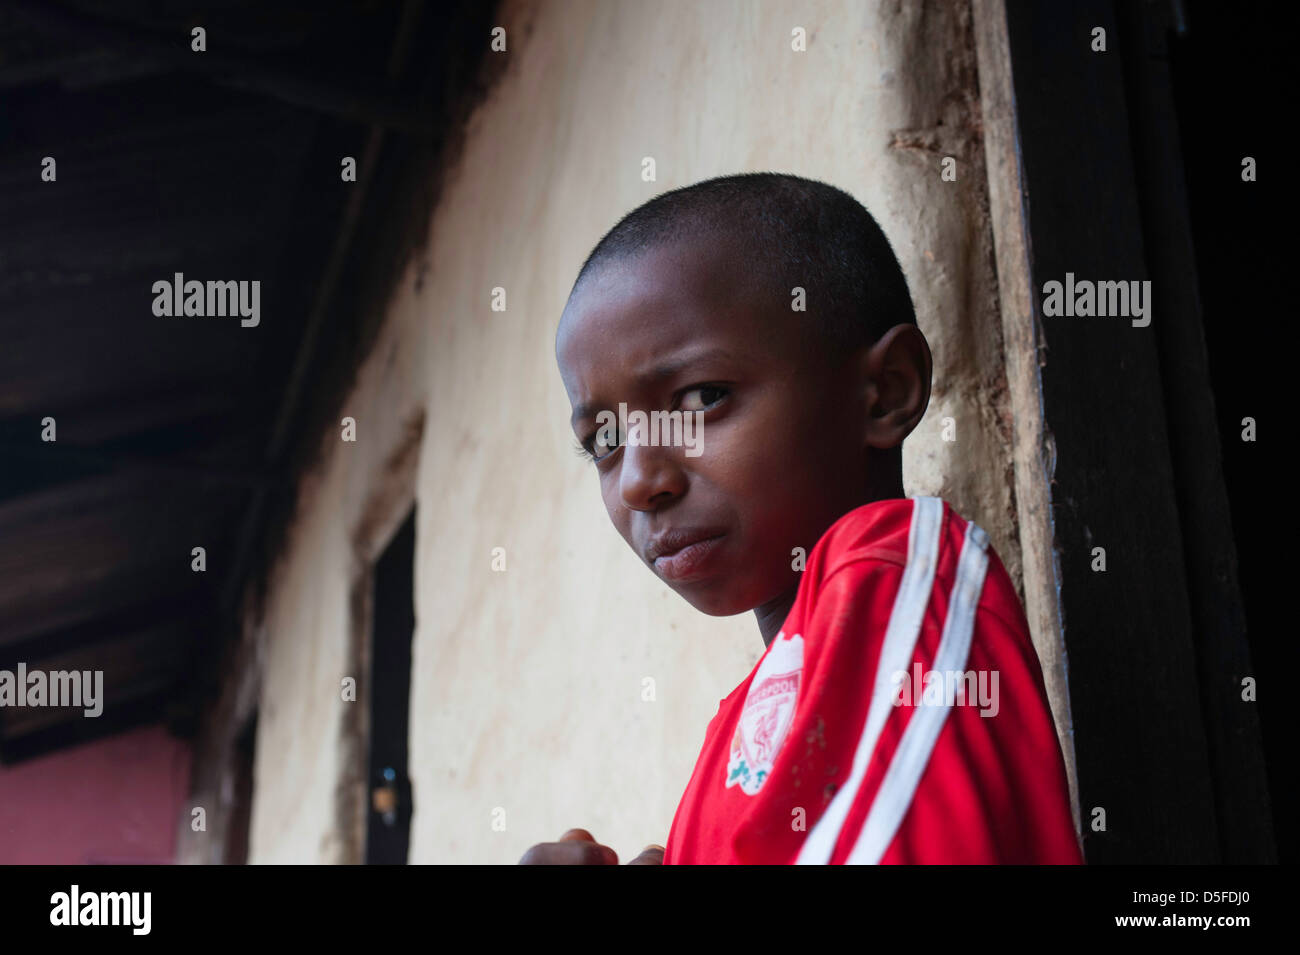 Afrikanischen jungen in der Nähe von Bamenda Kamerun Stockfoto